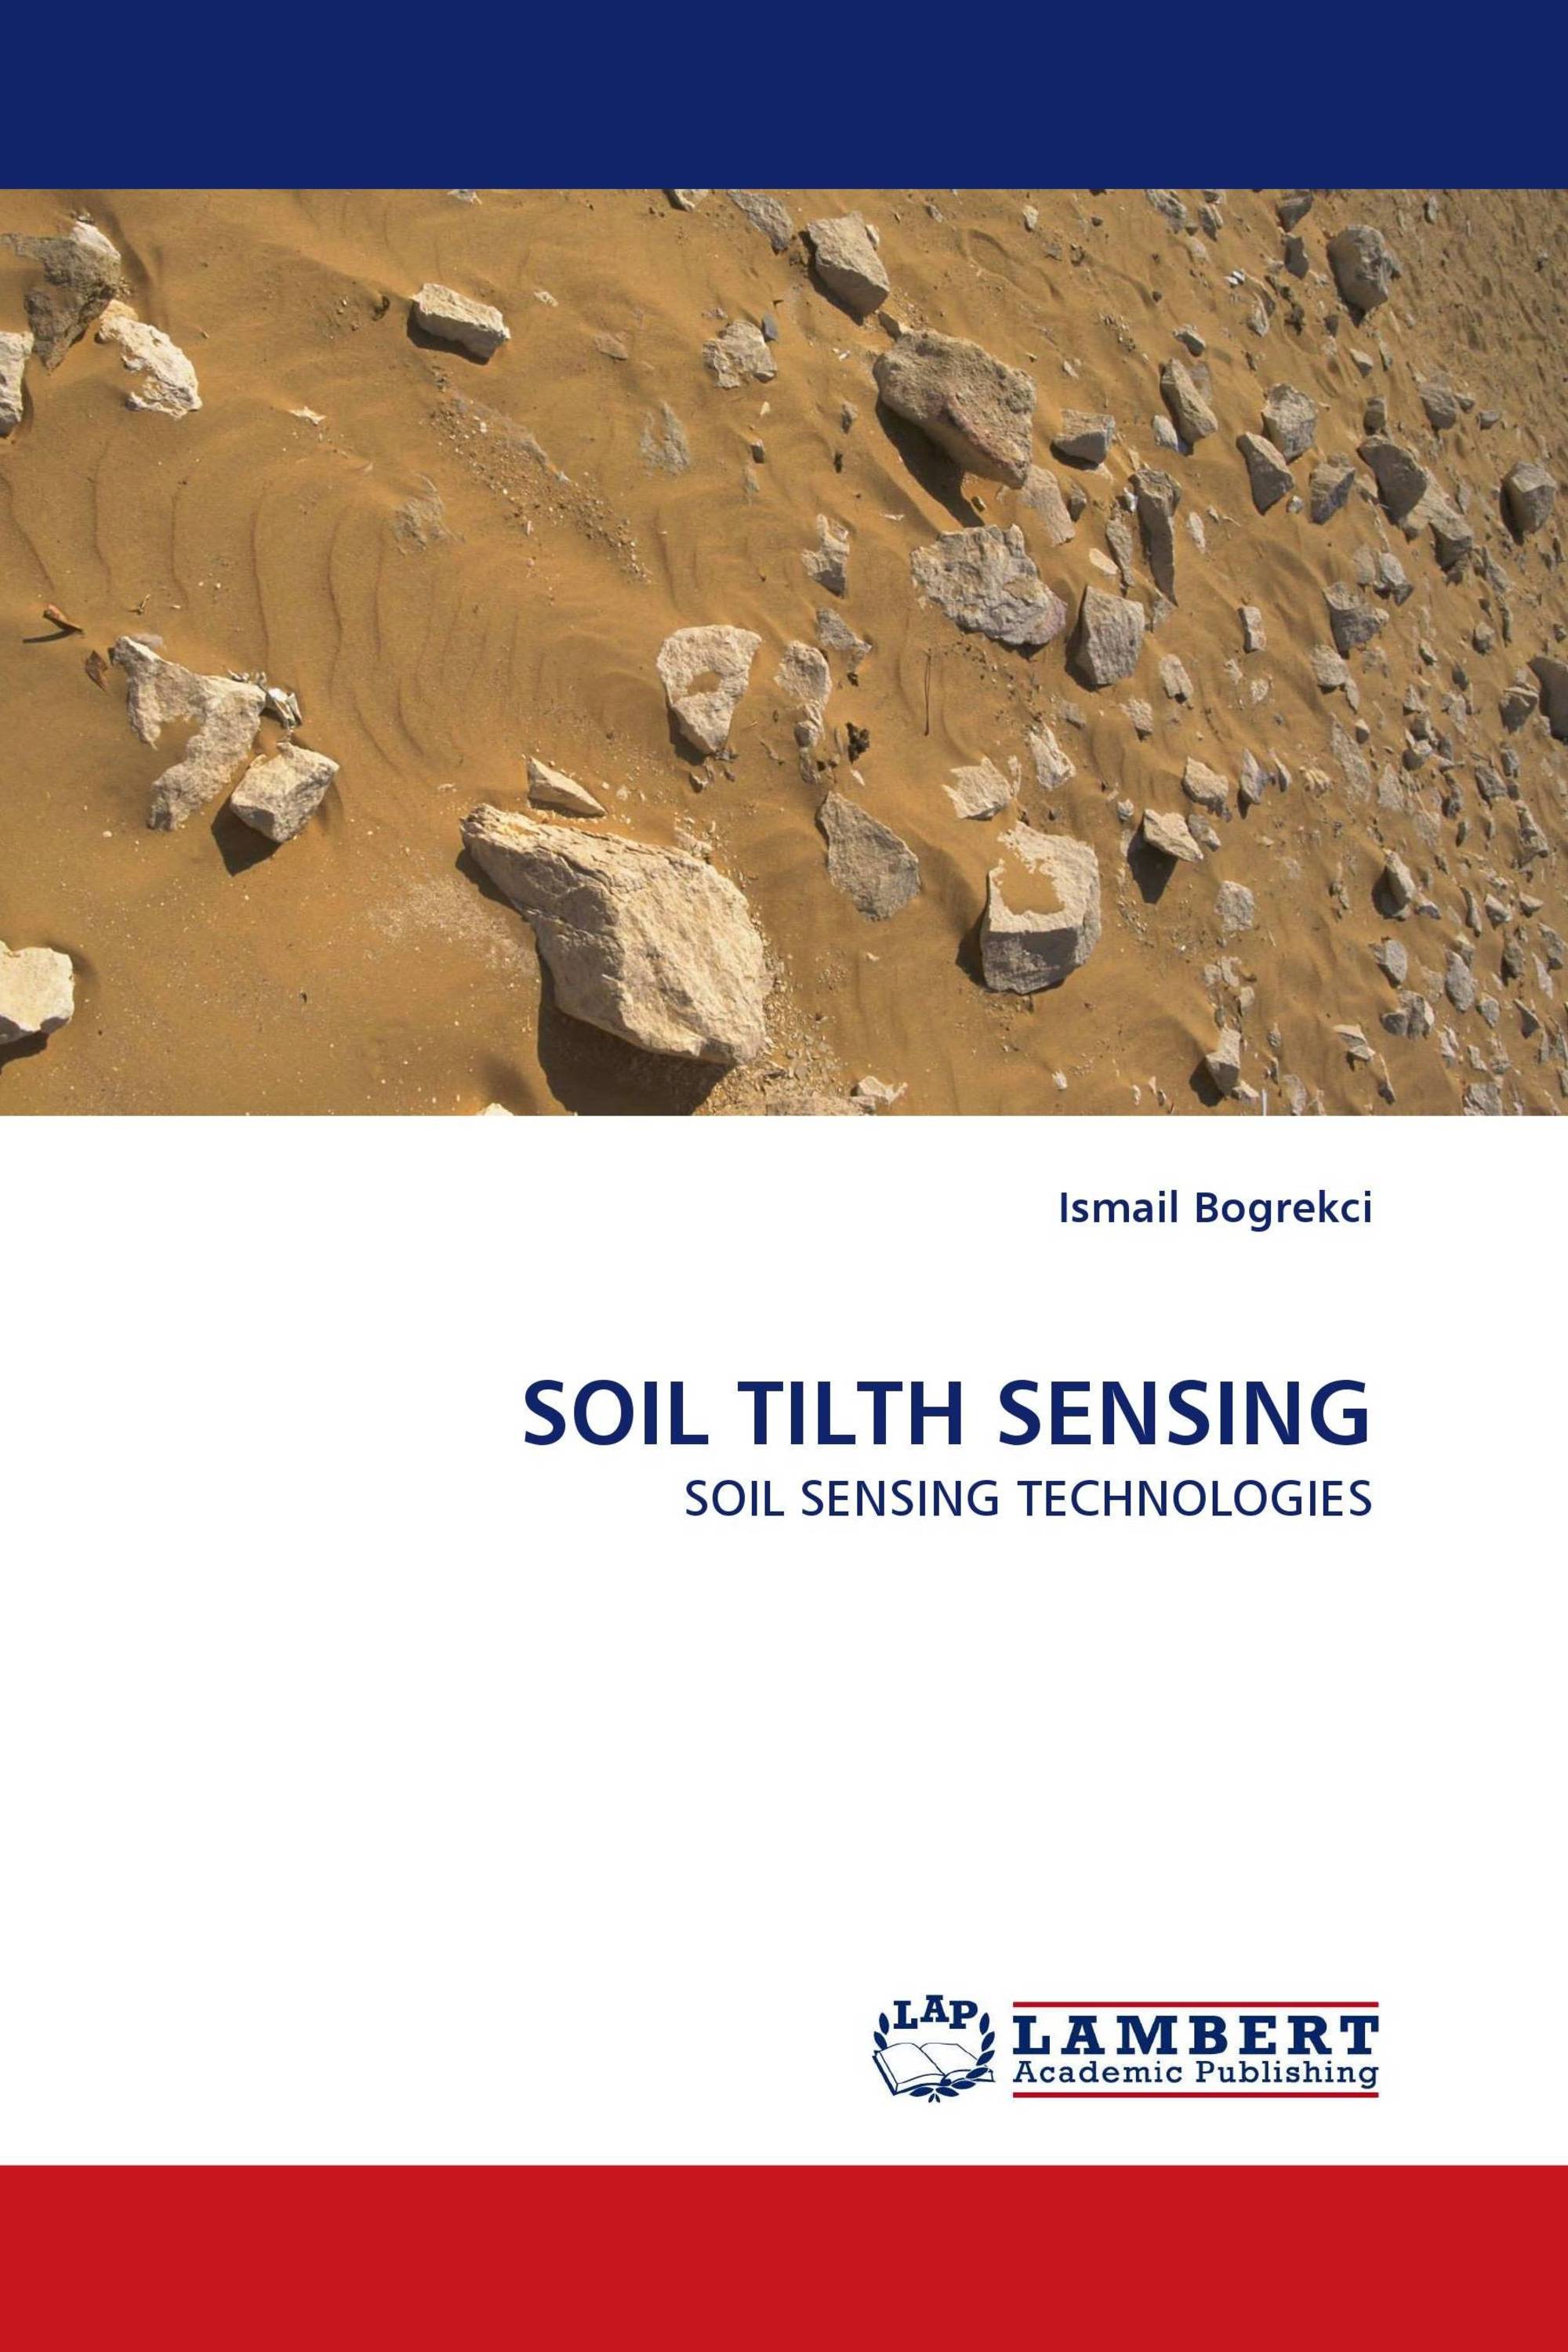 SOIL TILTH SENSING